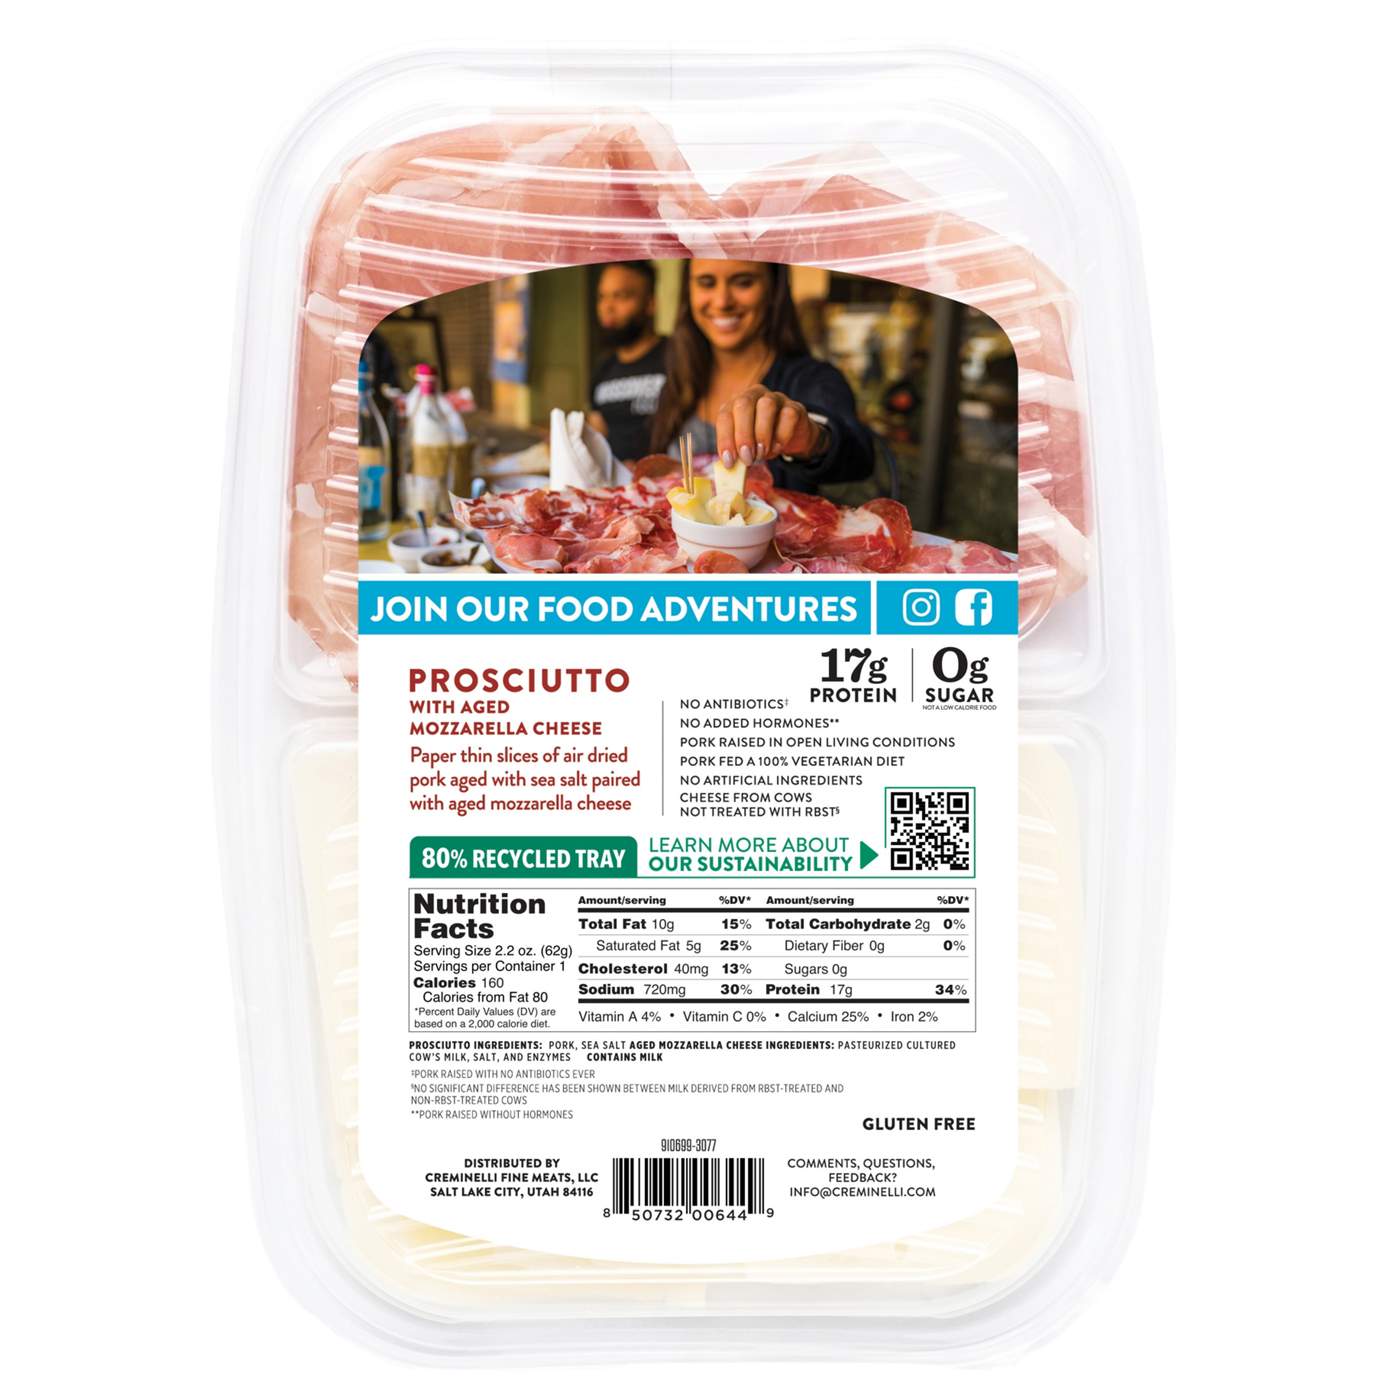 Creminelli Fine Meats Prosciutto with Aged Mozzarella Cheese; image 2 of 2